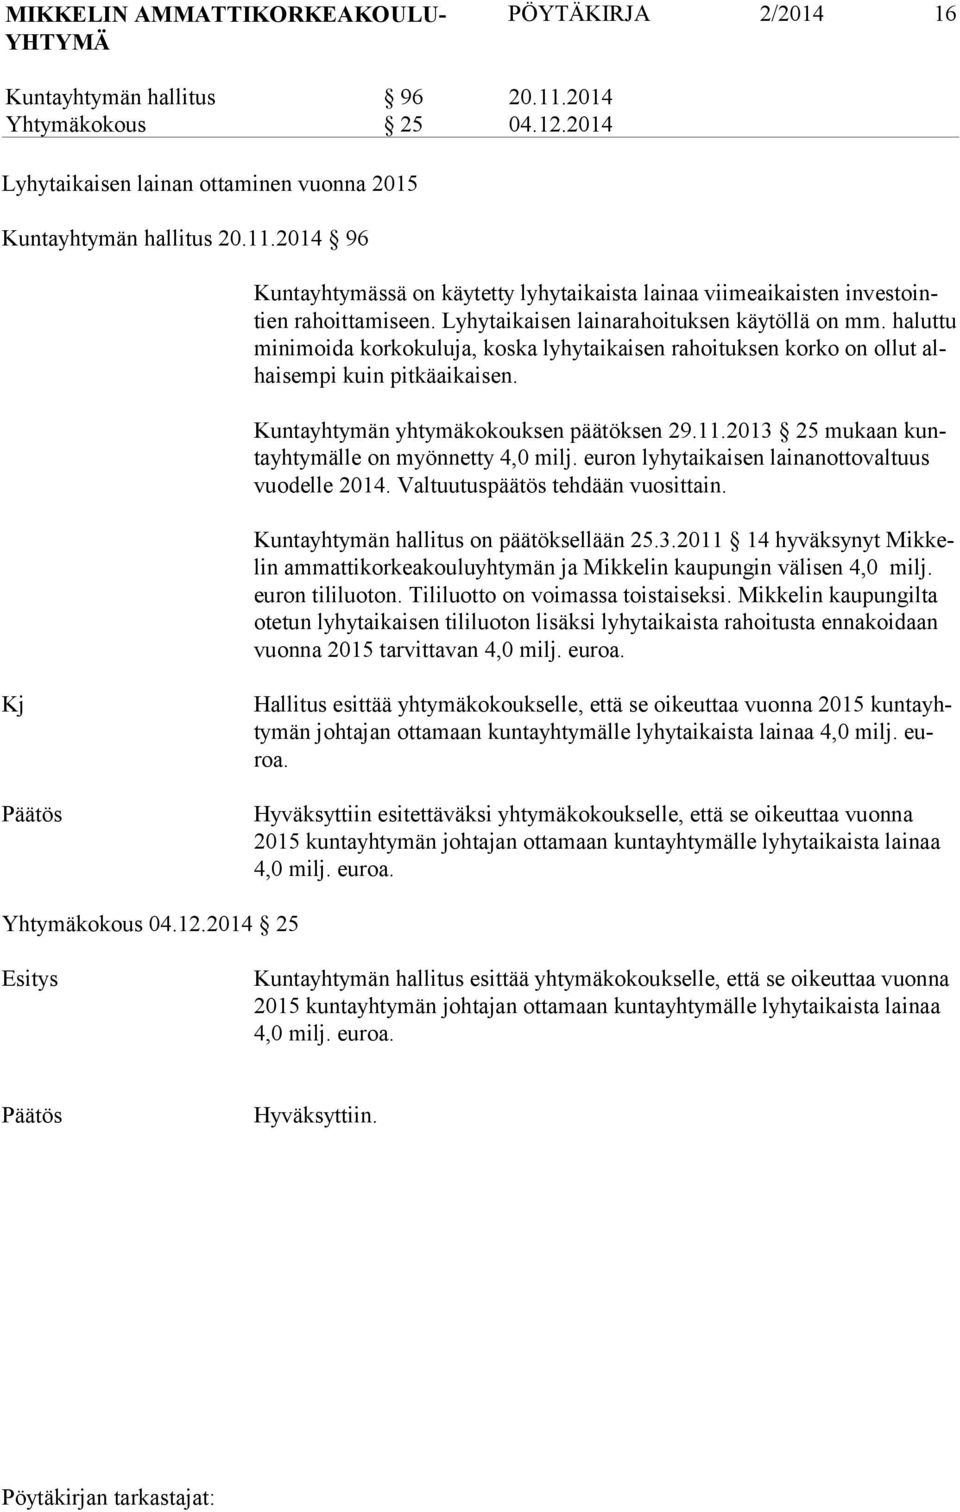 11.2013 25 mukaan kunta yhtymälle on myönnetty 4,0 milj. euron lyhytaikaisen lainanottovaltuus vuodelle 2014. Valtuutuspäätös tehdään vuosittain. Kuntayhtymän hallitus on päätöksellään 25.3.2011 14 hyväksynyt Mikkelin ammattikorkeakouluyhtymän ja Mikkelin kaupungin välisen 4,0 milj.